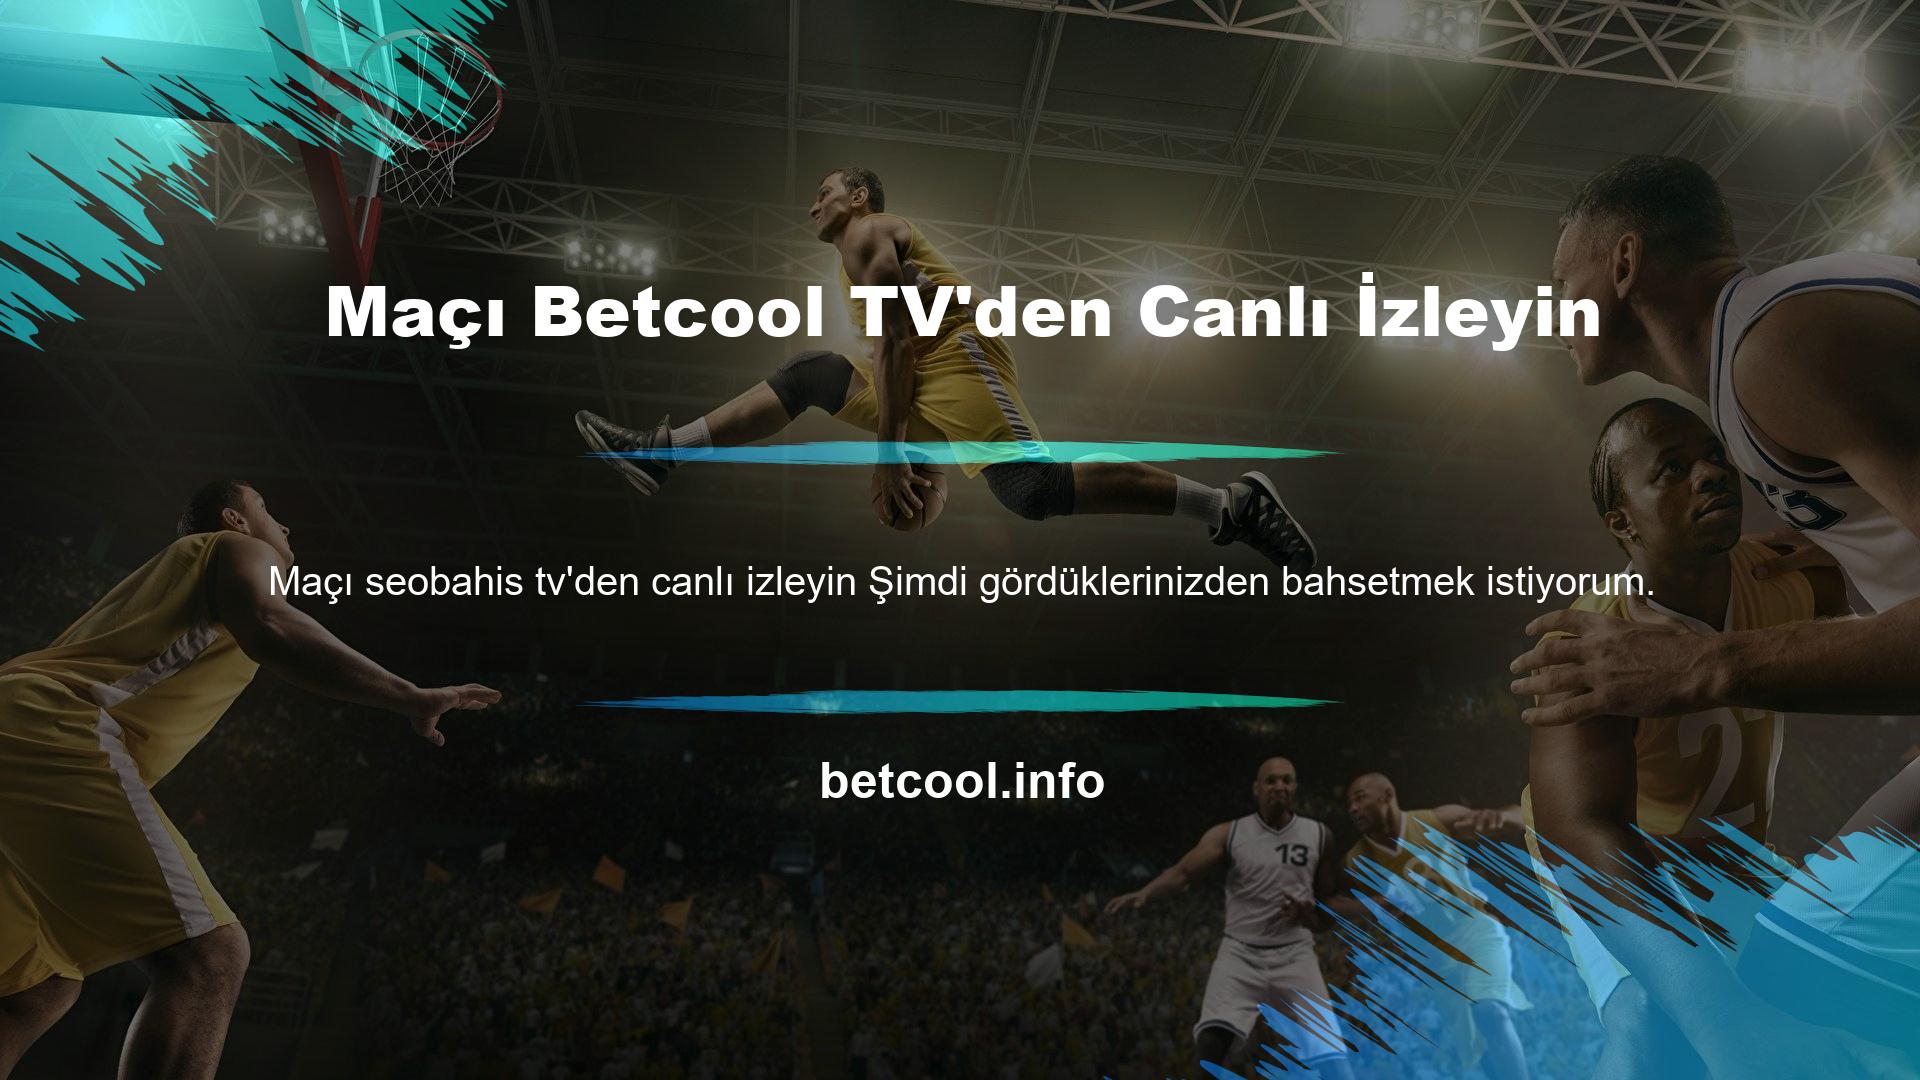 Maçı Betcool TV'den Canlı İzleyin